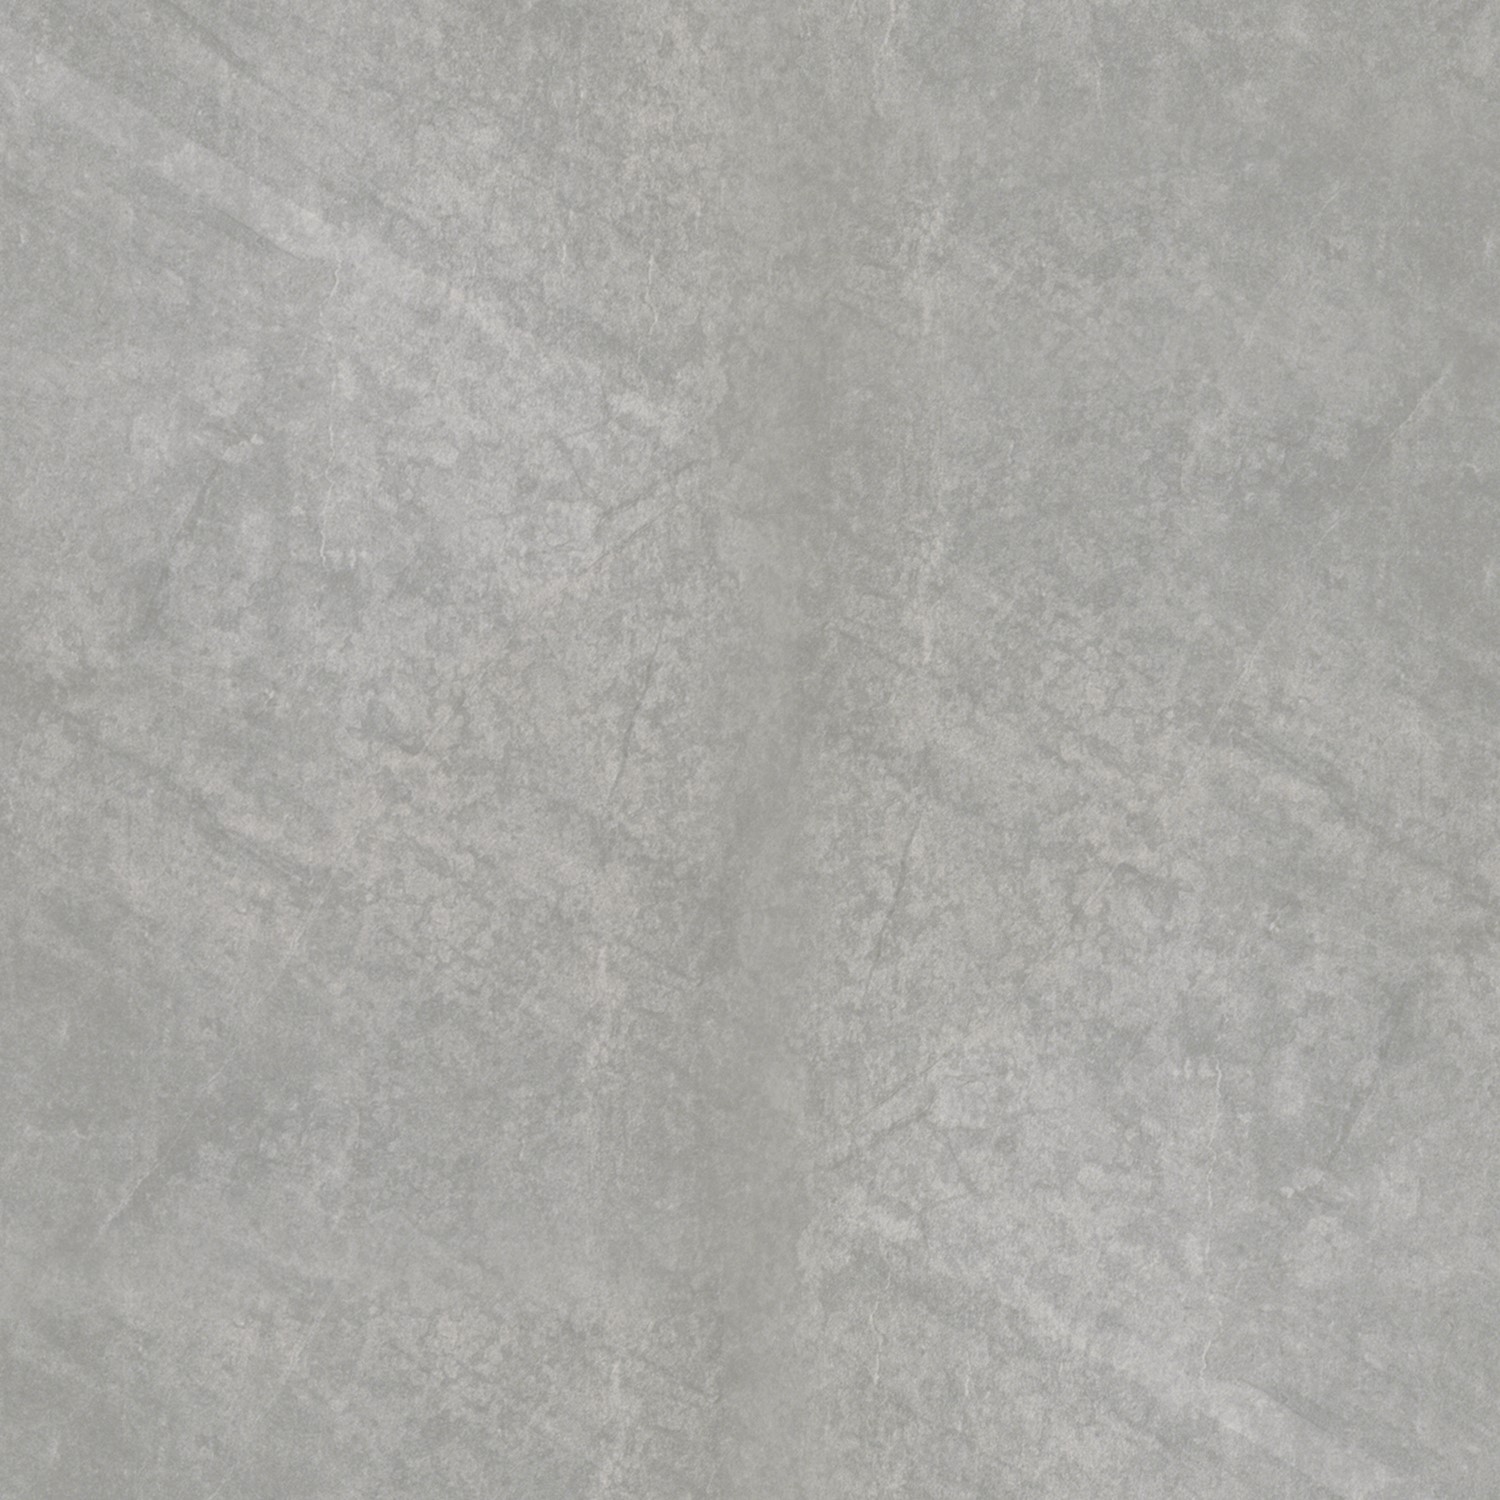 Dark Grey Stone Effect Floor Tile 45 x 45cm - Carlisle